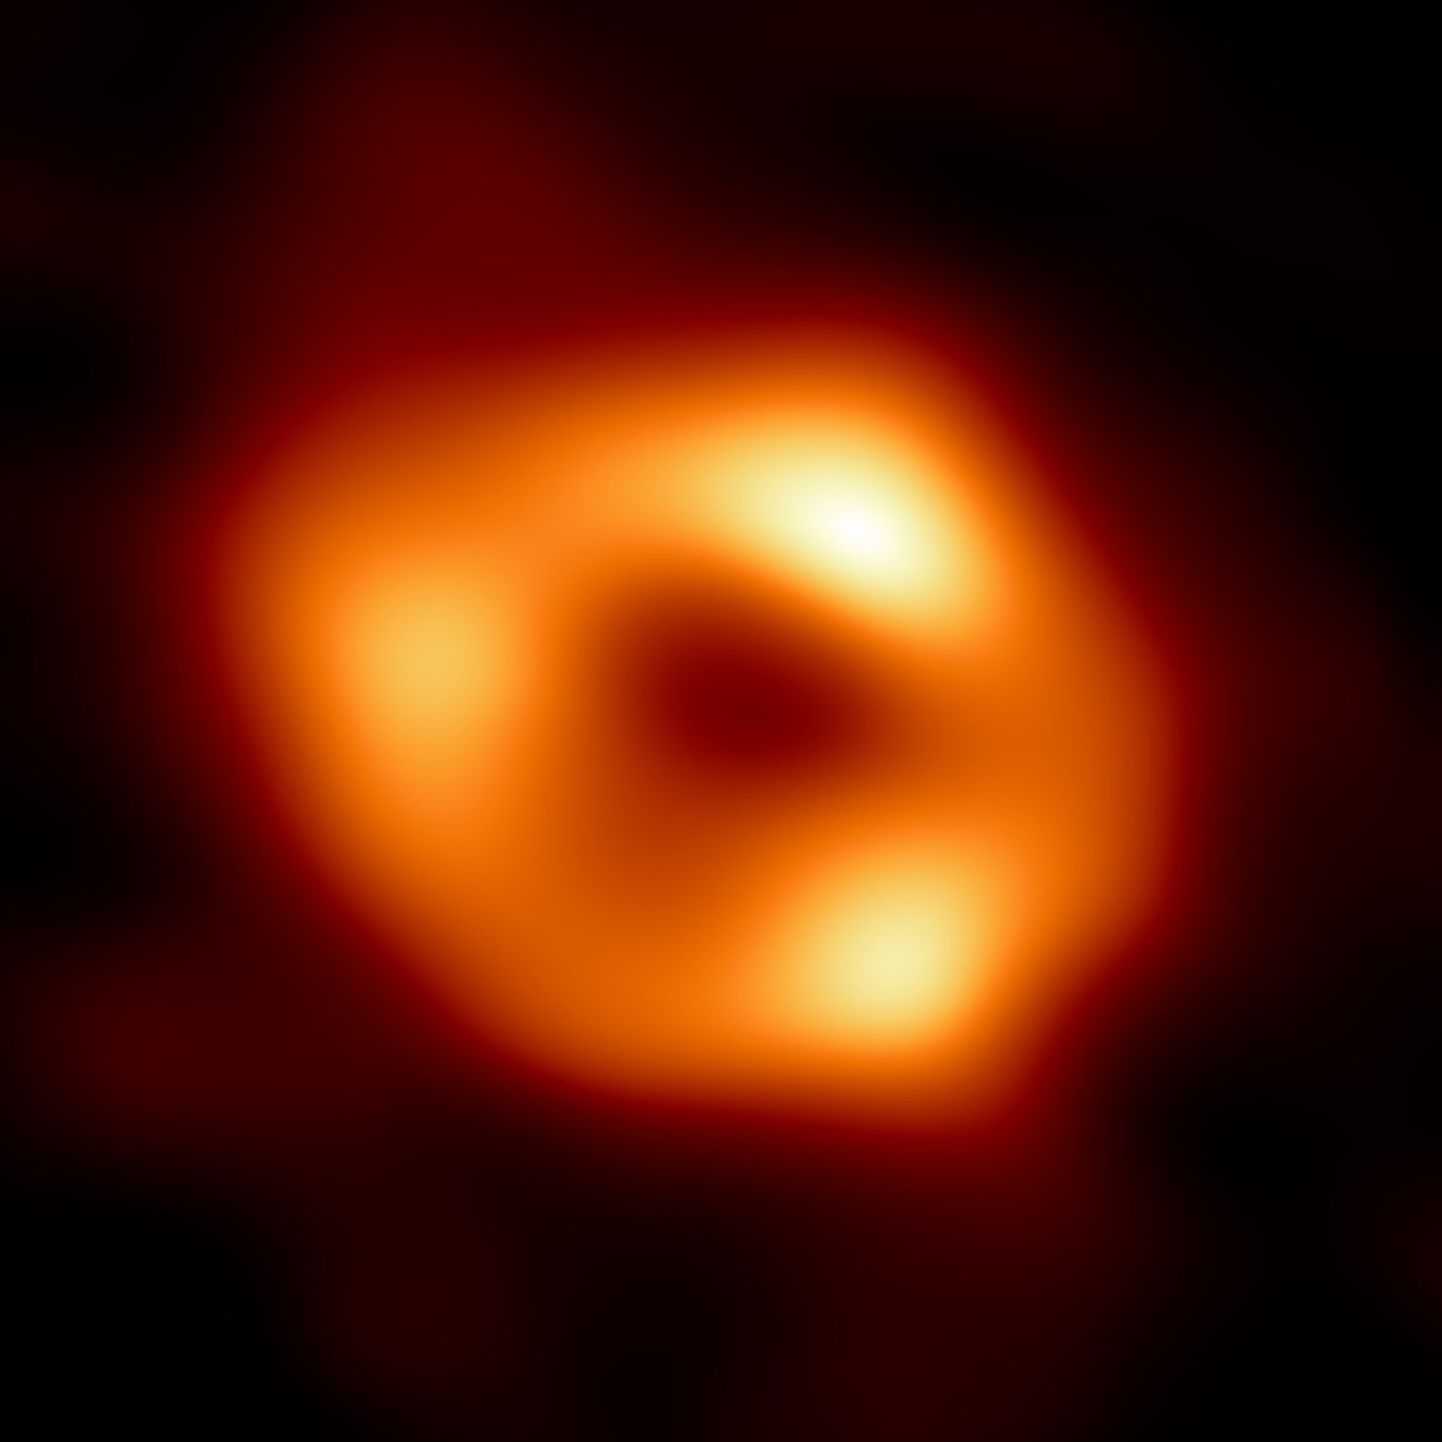 Sagittarius A* on ülimassiivne must auk, mis asub Linnutee keskosas Amburi ja Skorpioni tähtkuju piiril.